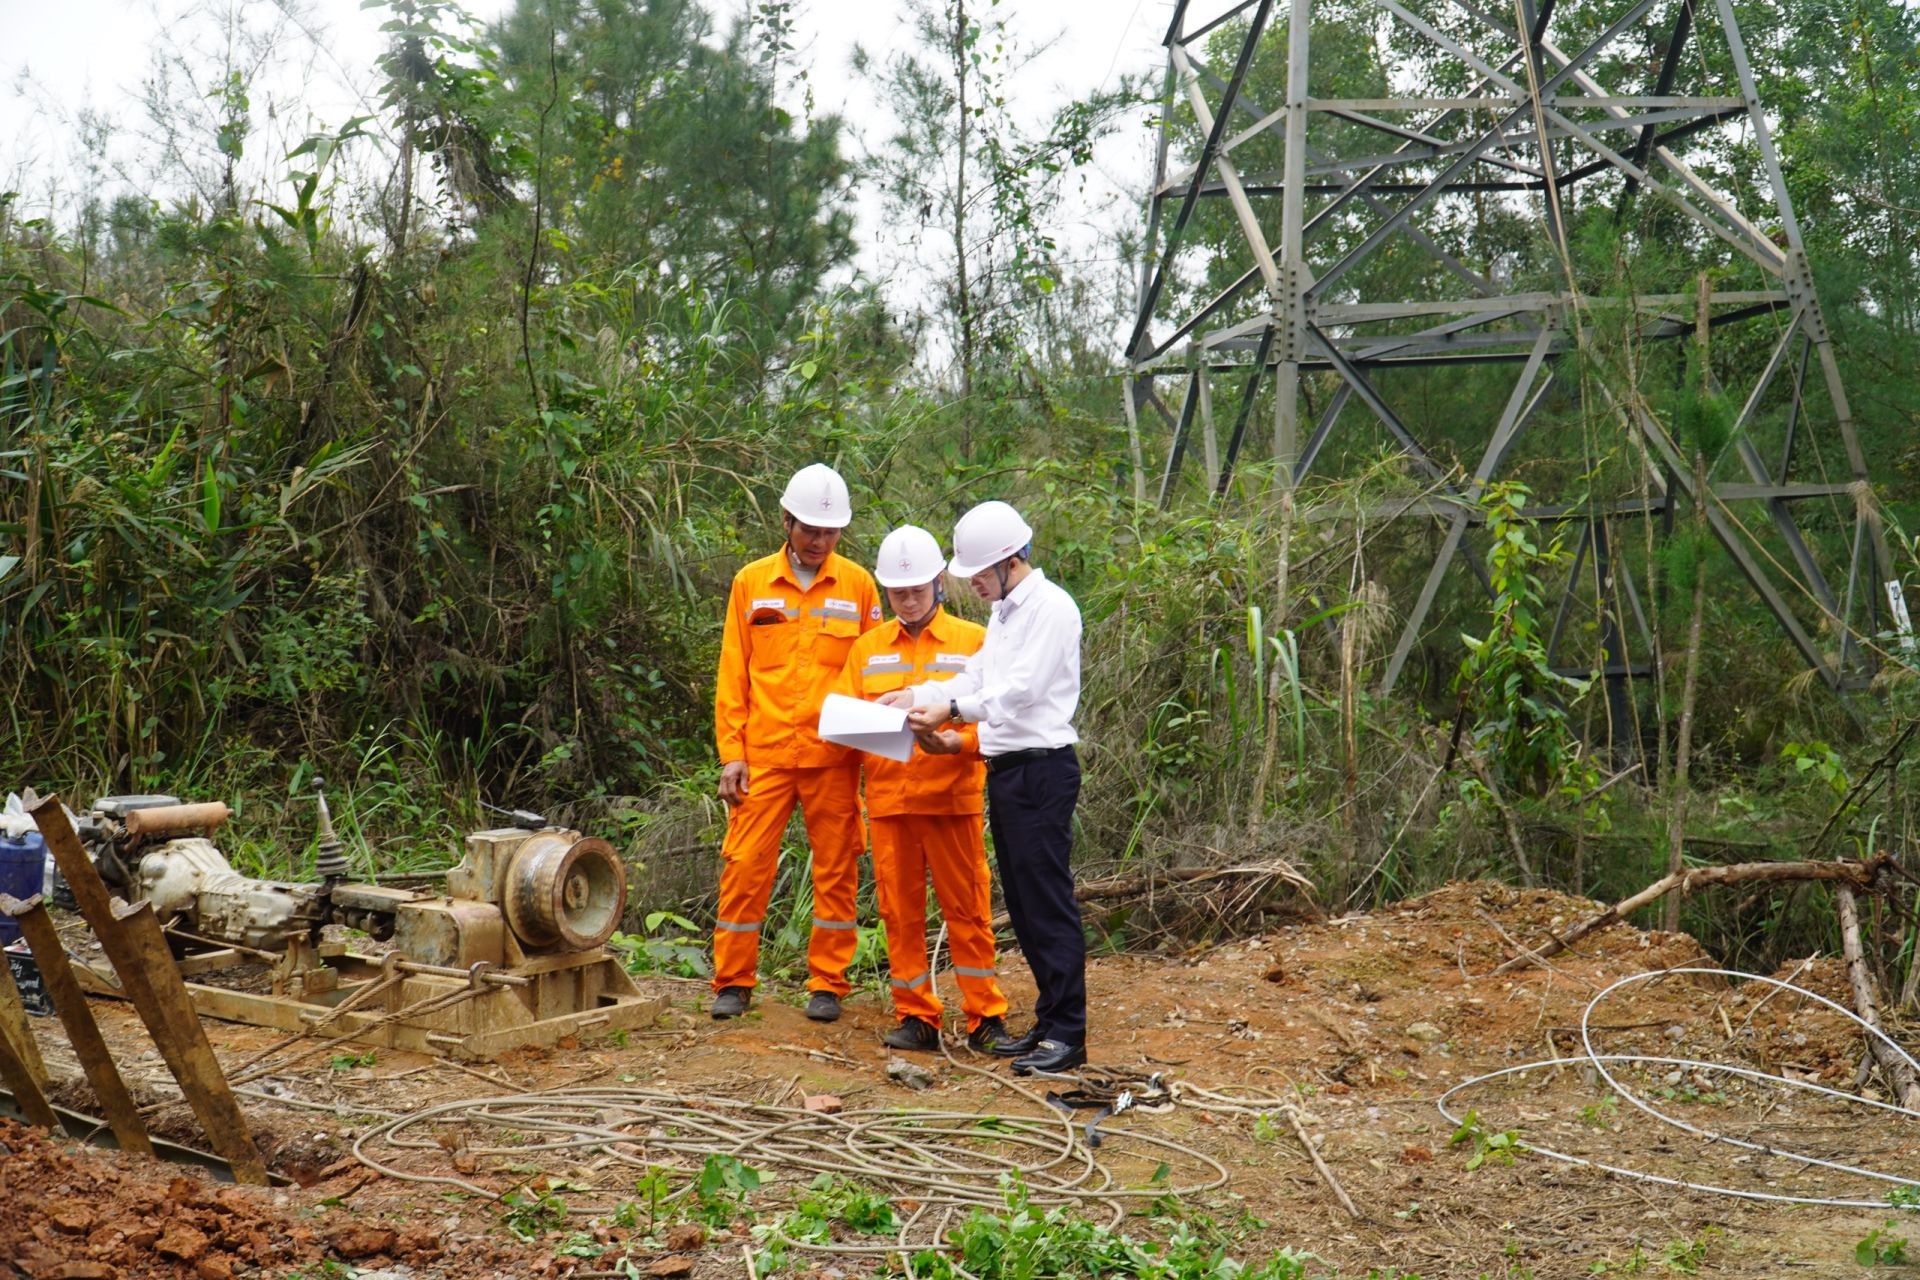 Quảng Ninh triển khai dự án cải tạo, nâng cao đường dây mạch kép 110kV 173, 174T500 Quảng Ninh Giáp Khẩu - Hà Tu - Hà Lầm